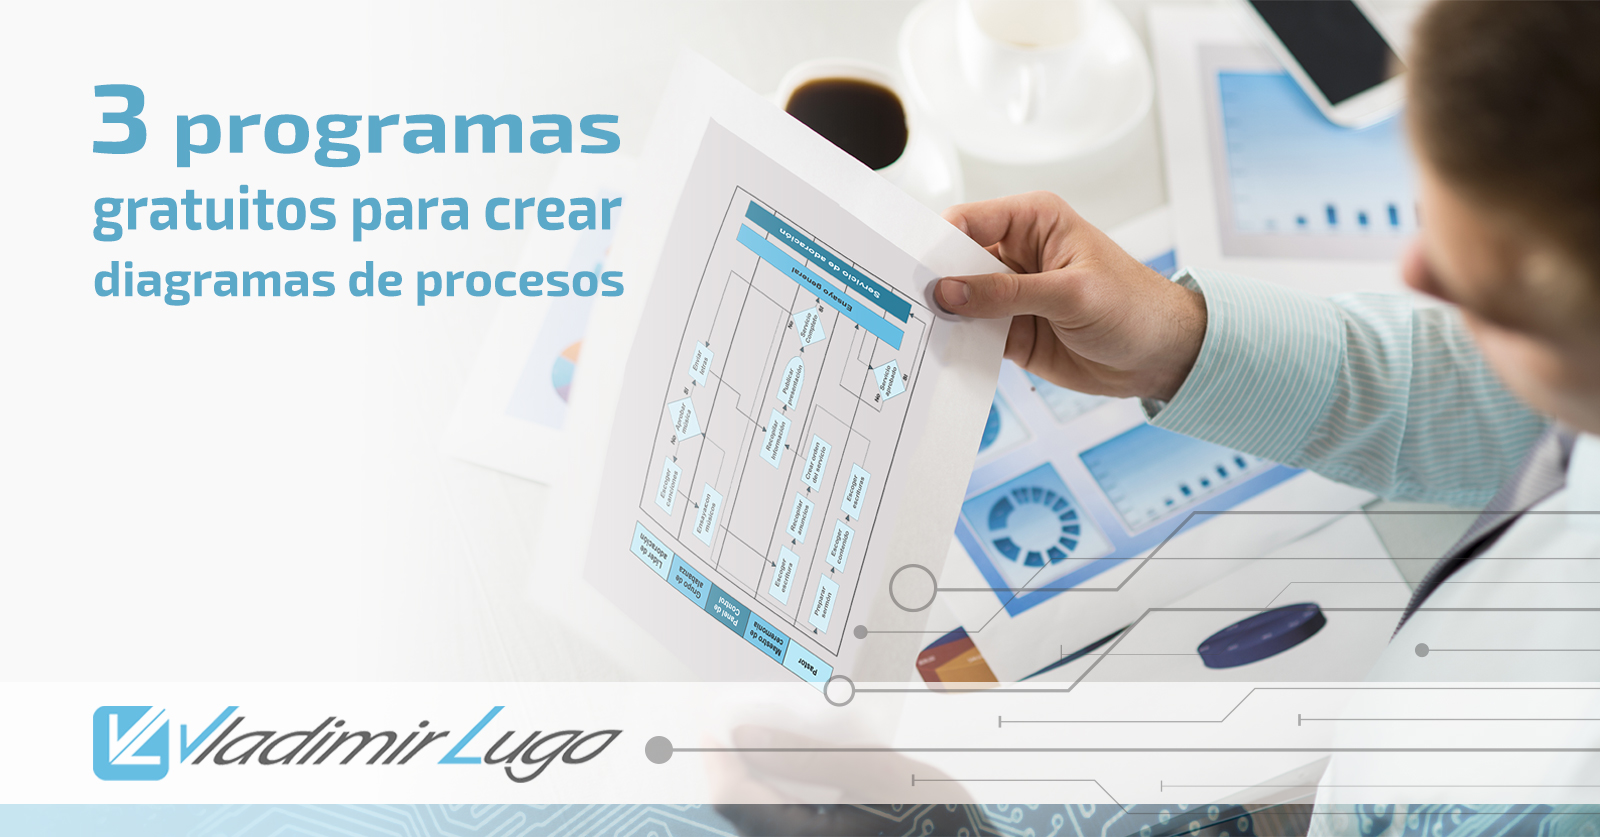 3 programa gratuitos para crear diagramas de procesos